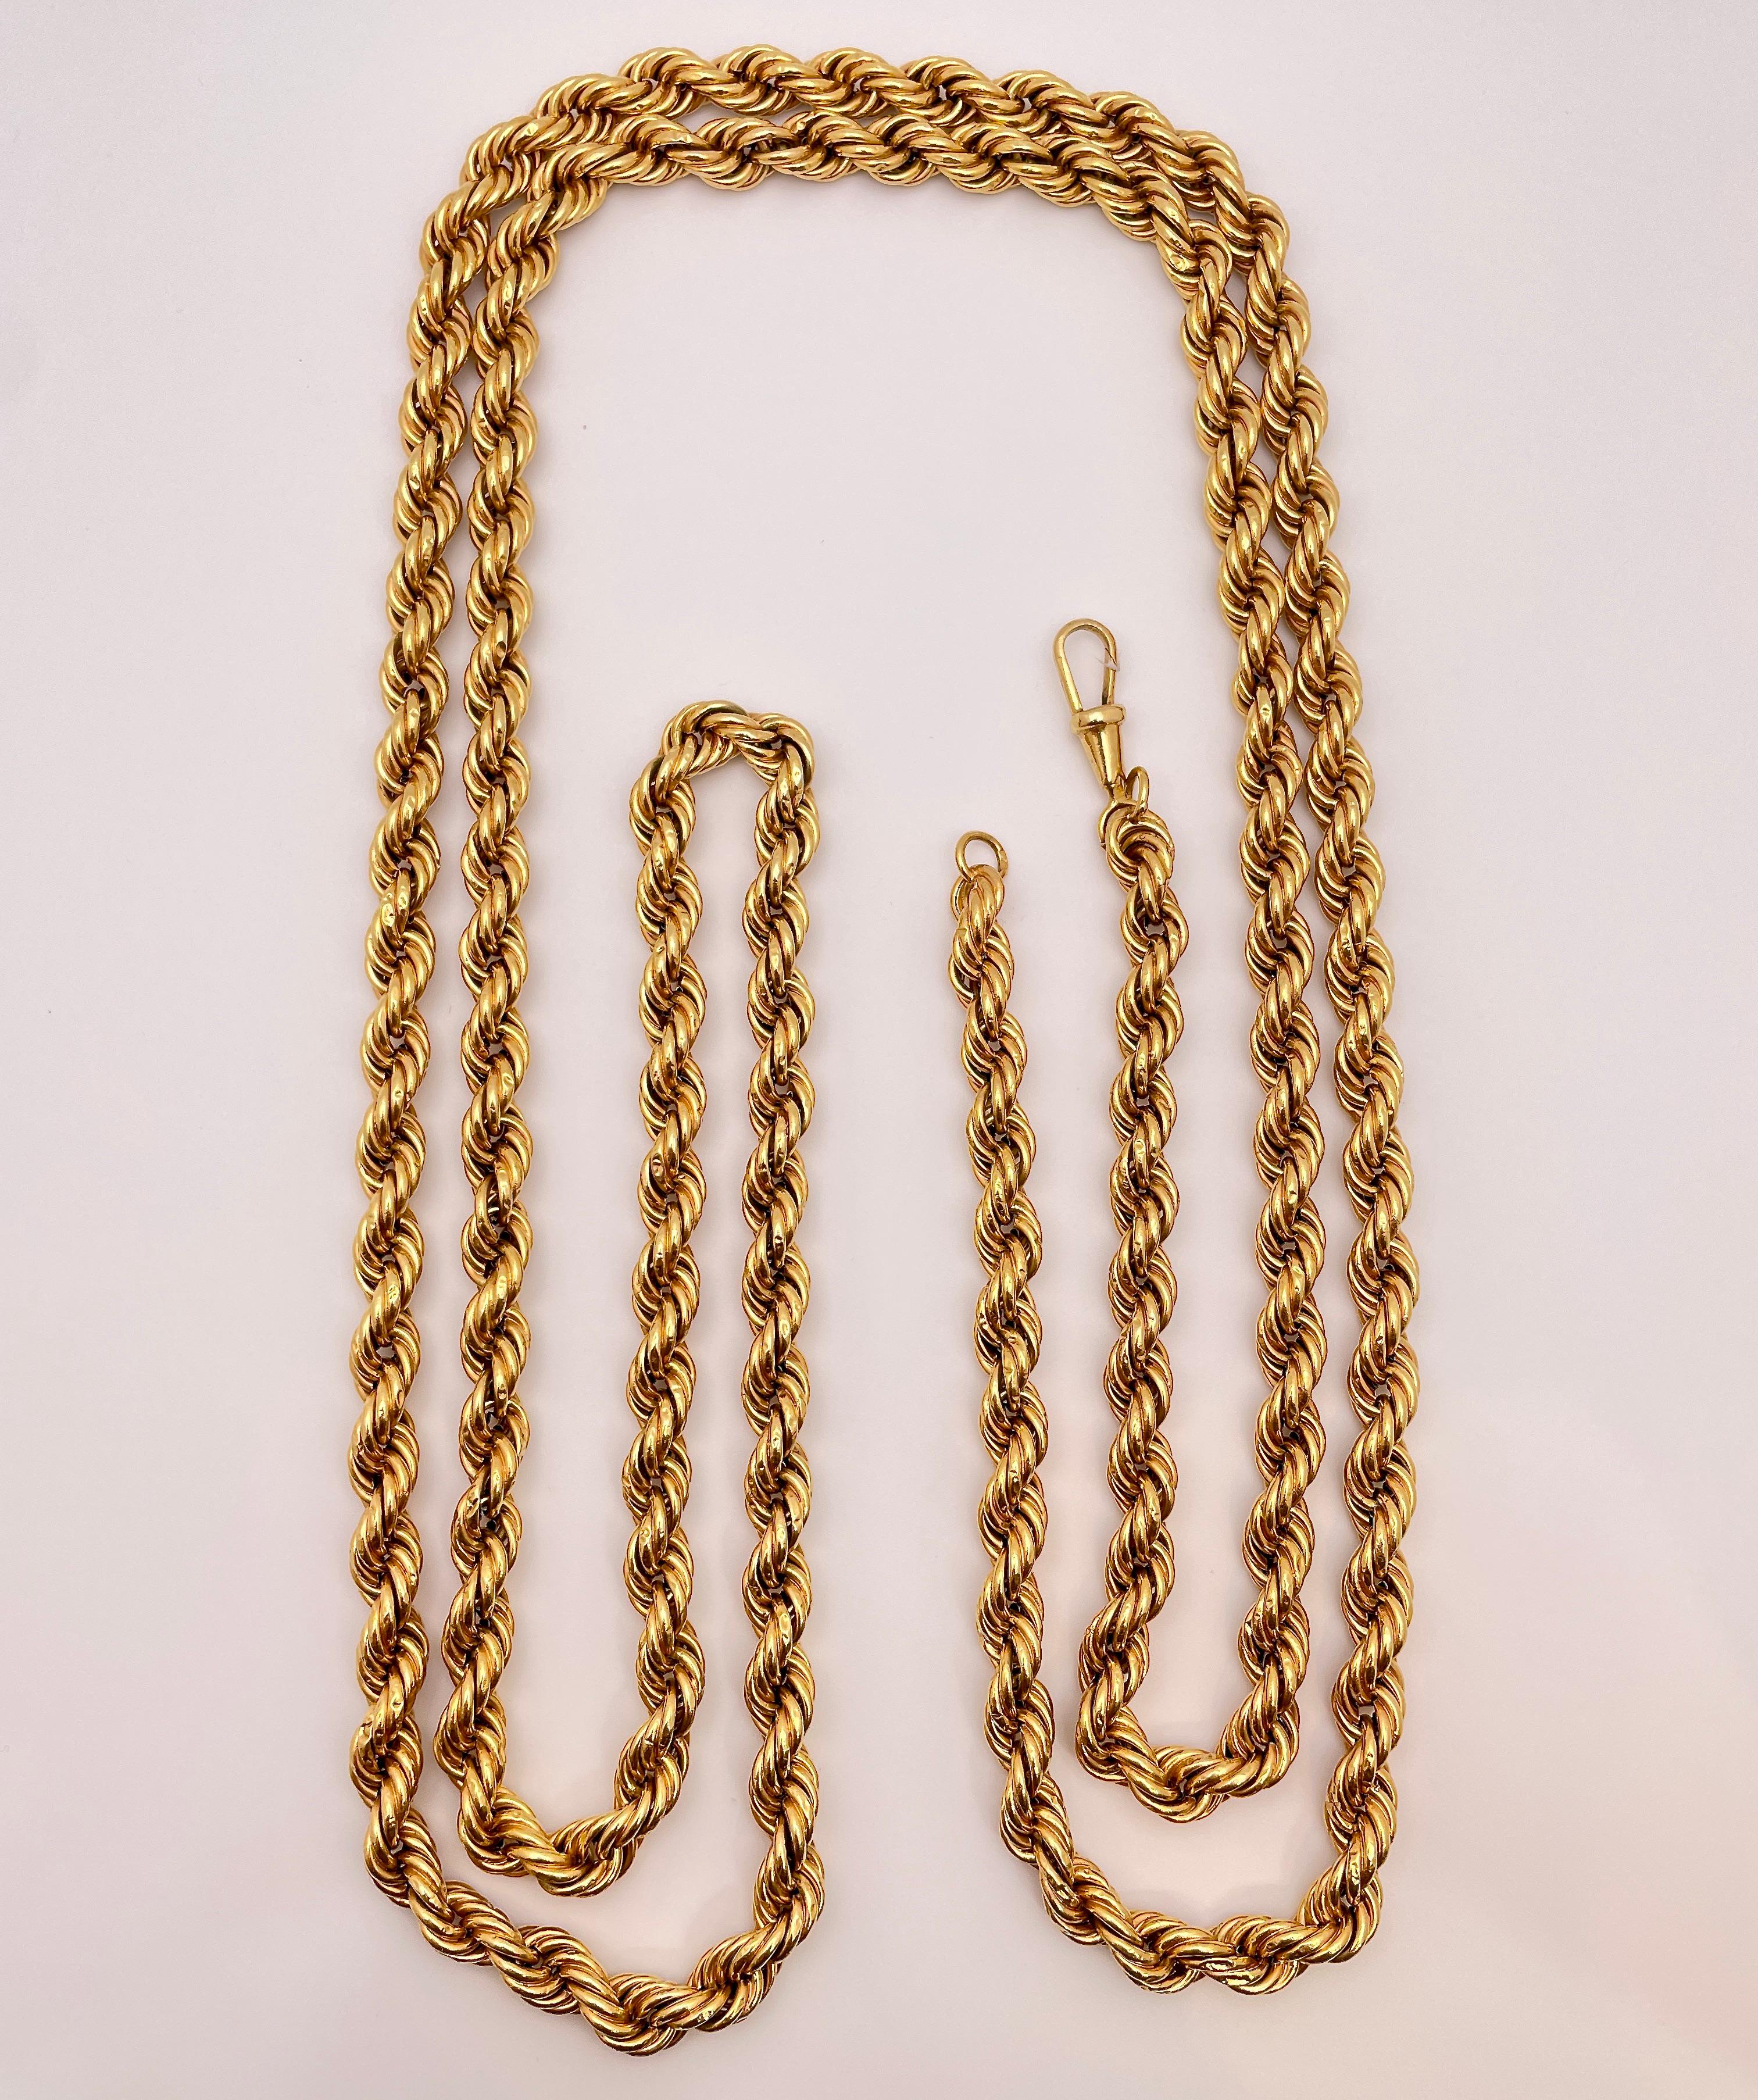 Collier original en chaîne de corde en or jaune épais de 18 carats, vers les années 1950. Cette magnifique chaîne mesure une longueur impressionnante de 58,75 pouces, une largeur de 7,50 mm, présente un magnifique motif tissé flexible et a un poids